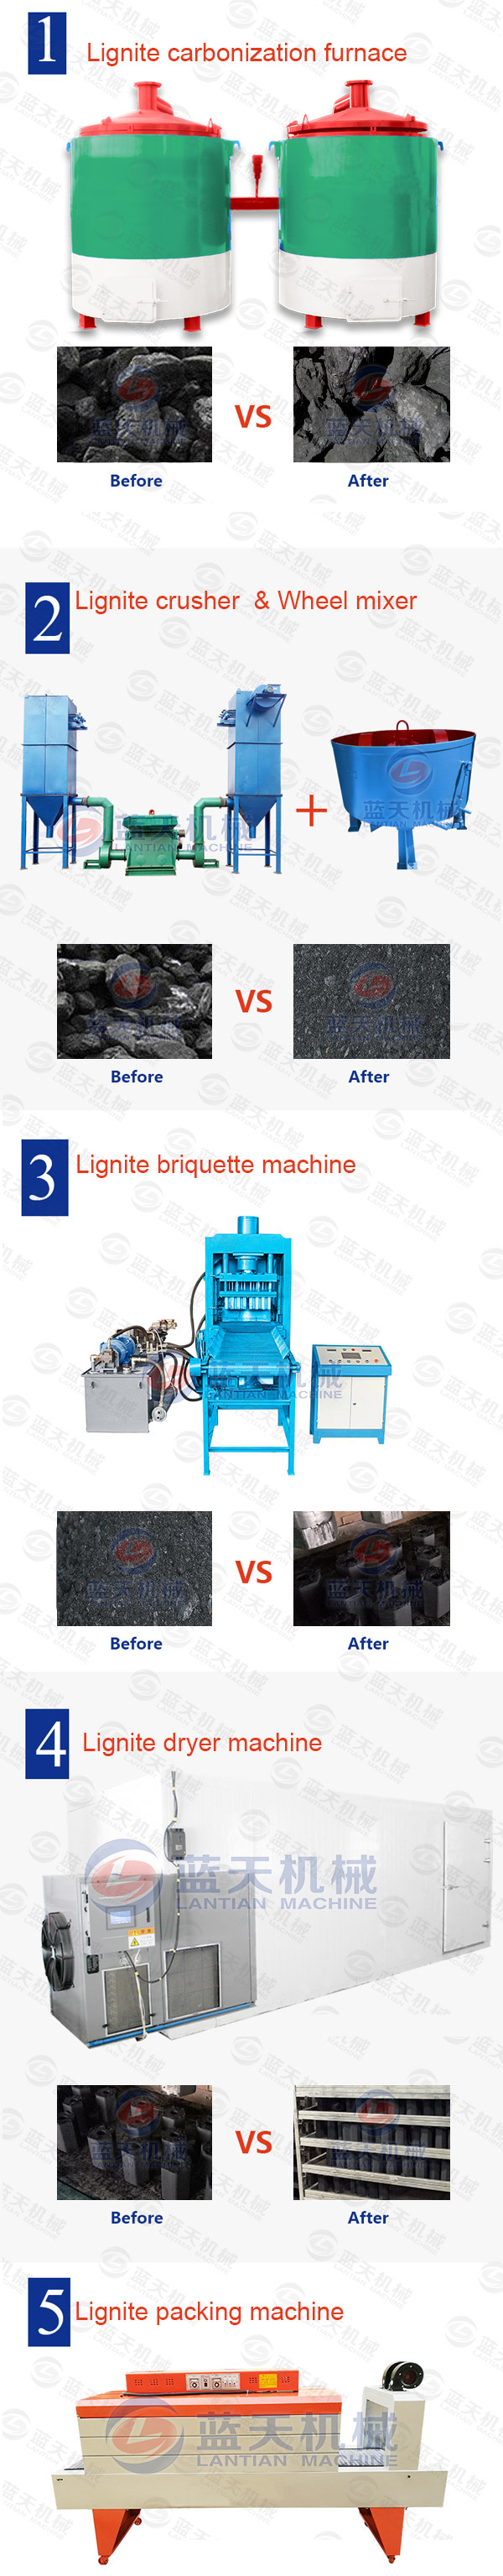 Lignite Briquette Machine